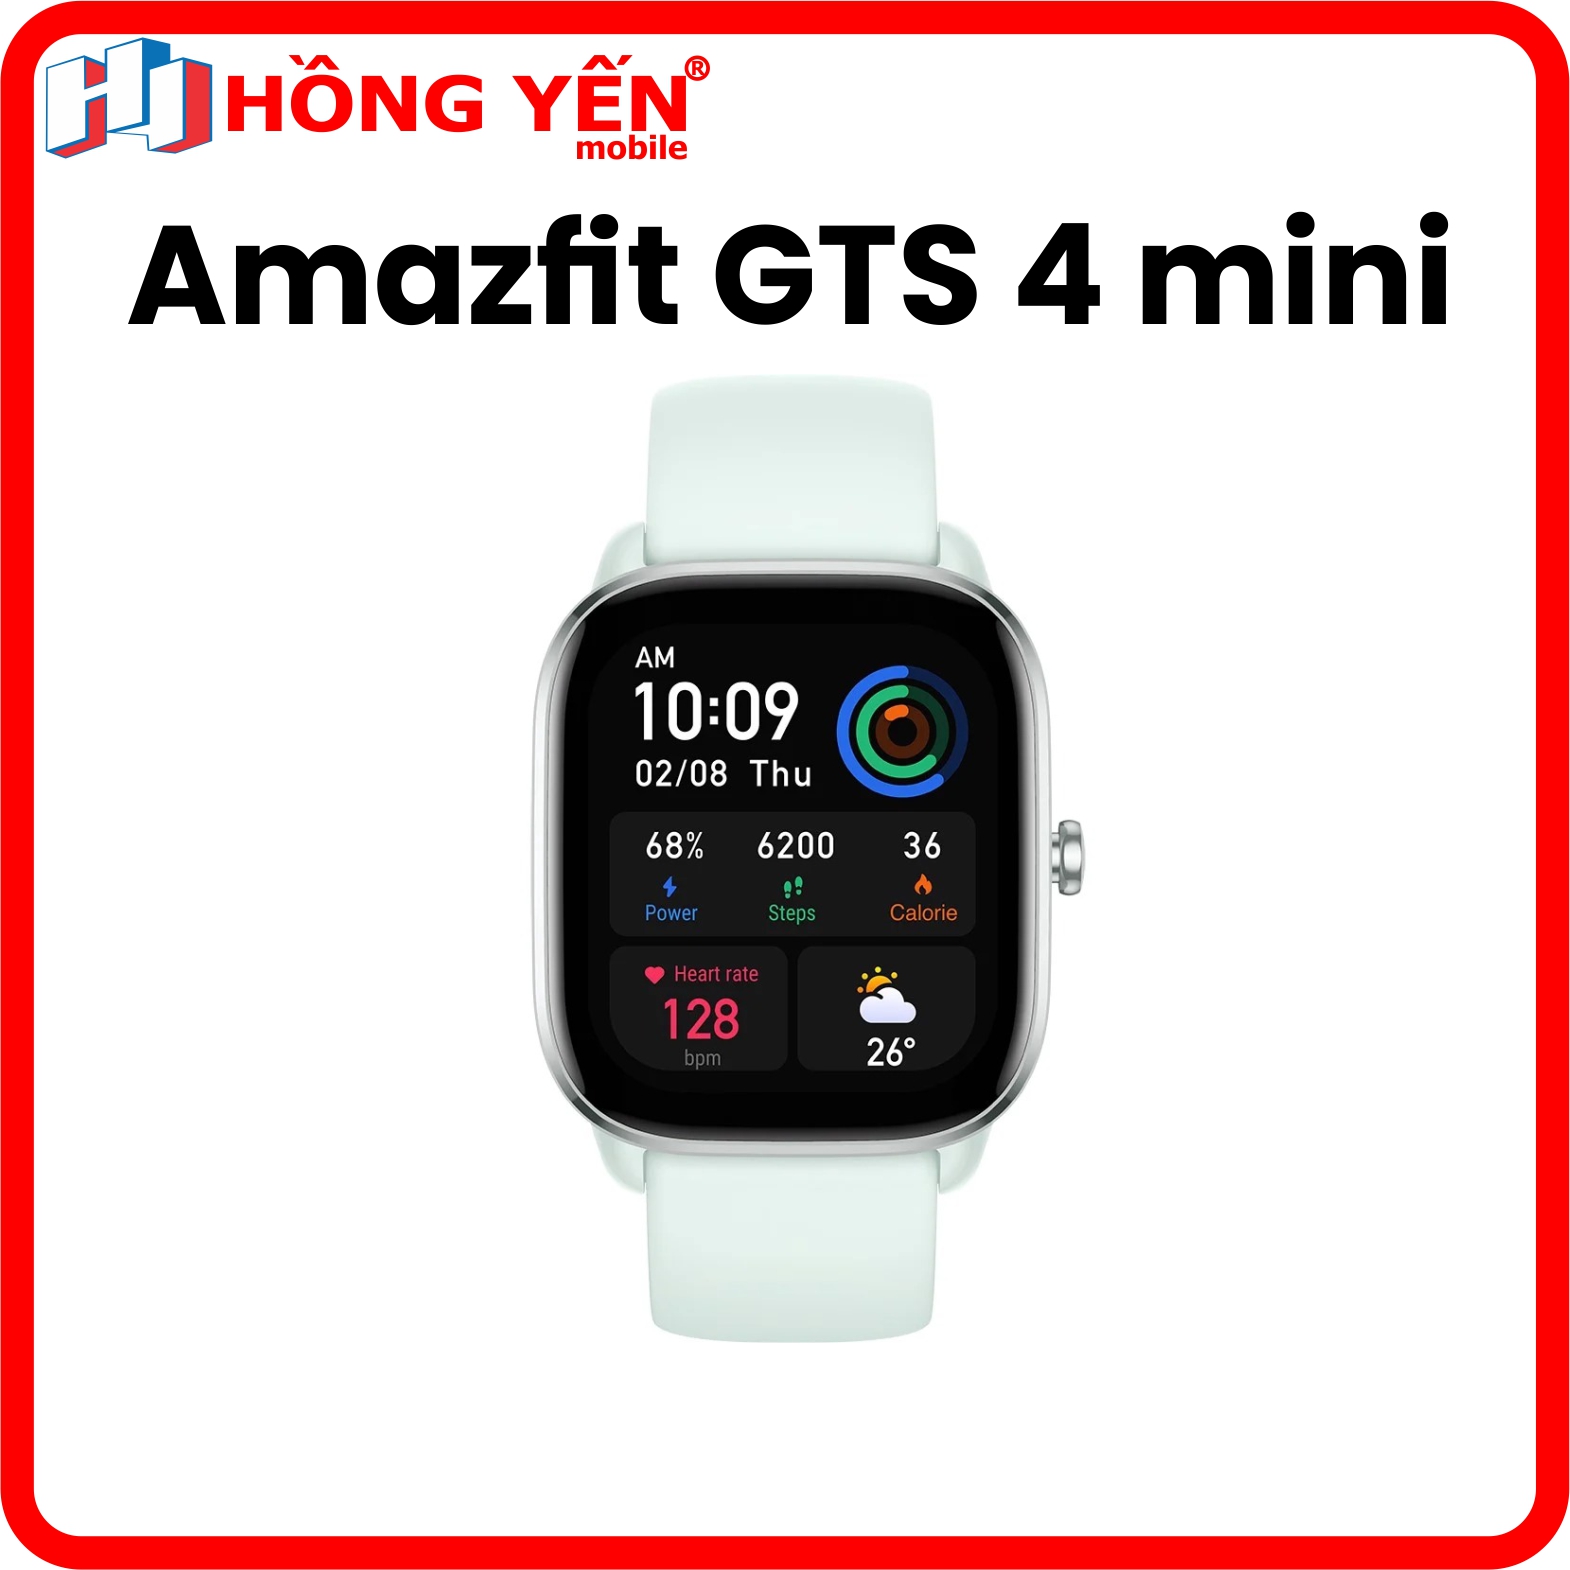 Đồng hồ thông minh Xiaomi Amazfit GTS - Hàng Chính Hãng Digiworld